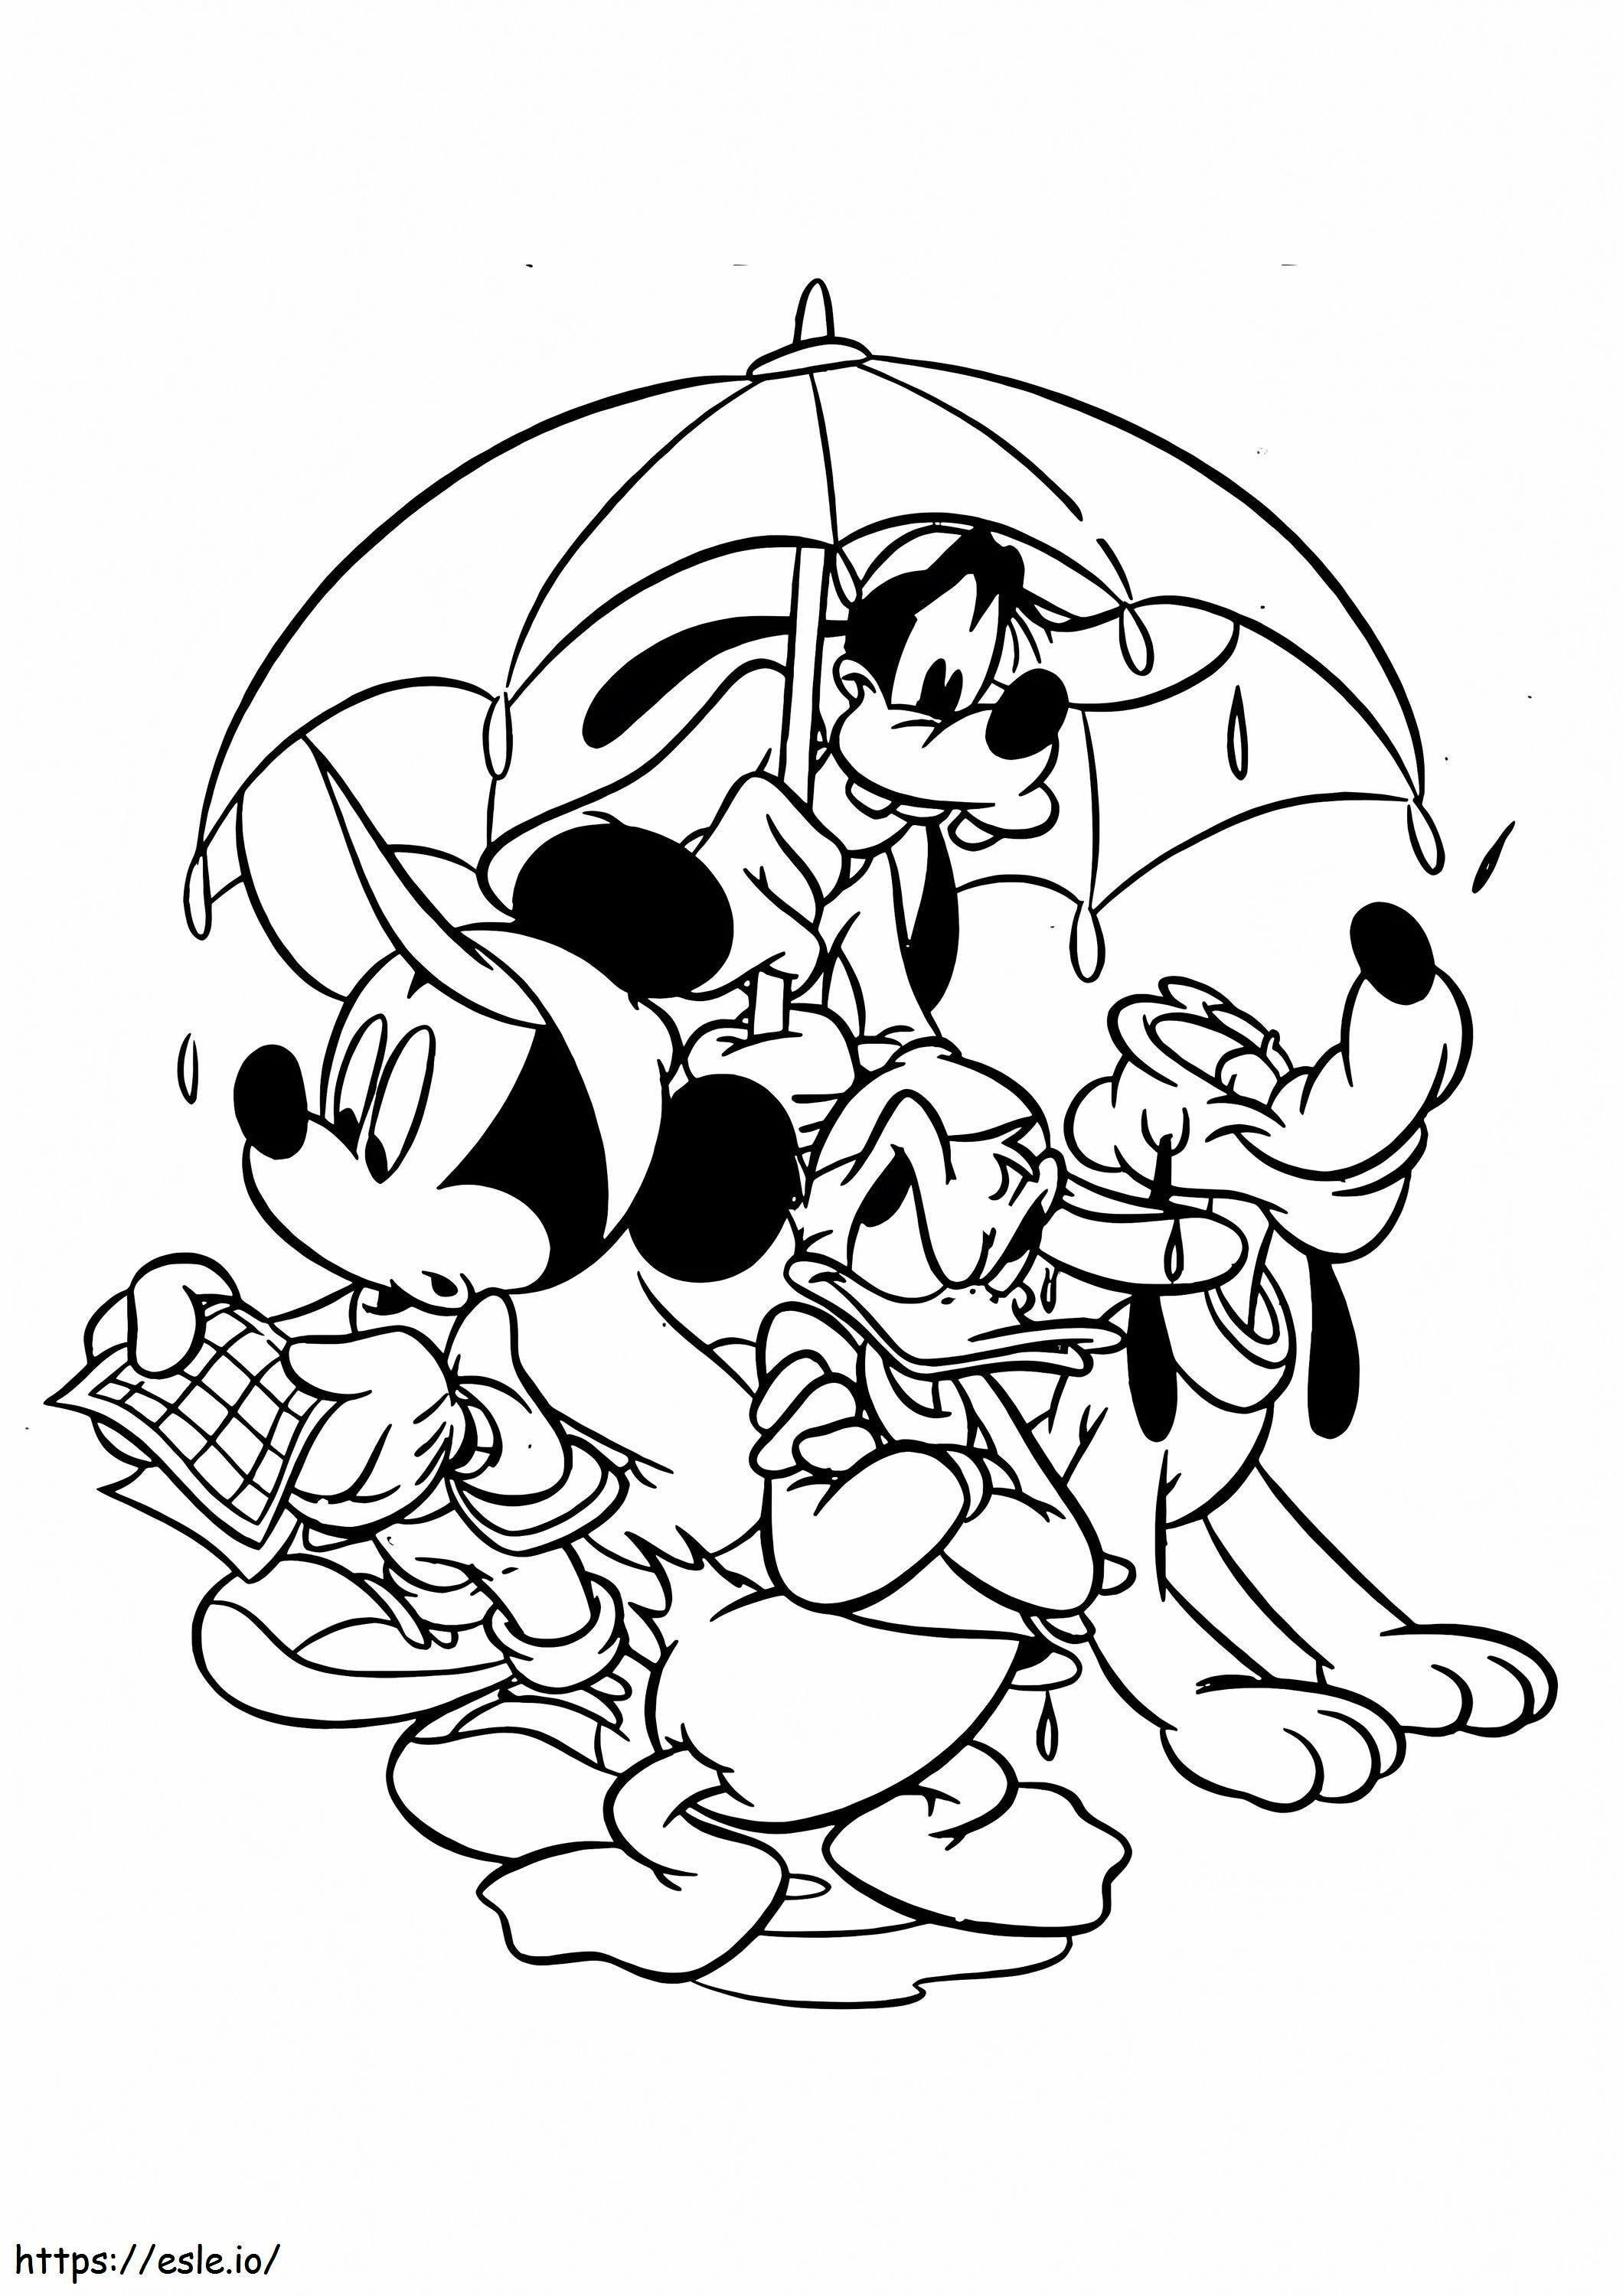 Leuke Mickey Mouse en zijn vrienden kleurplaat kleurplaat